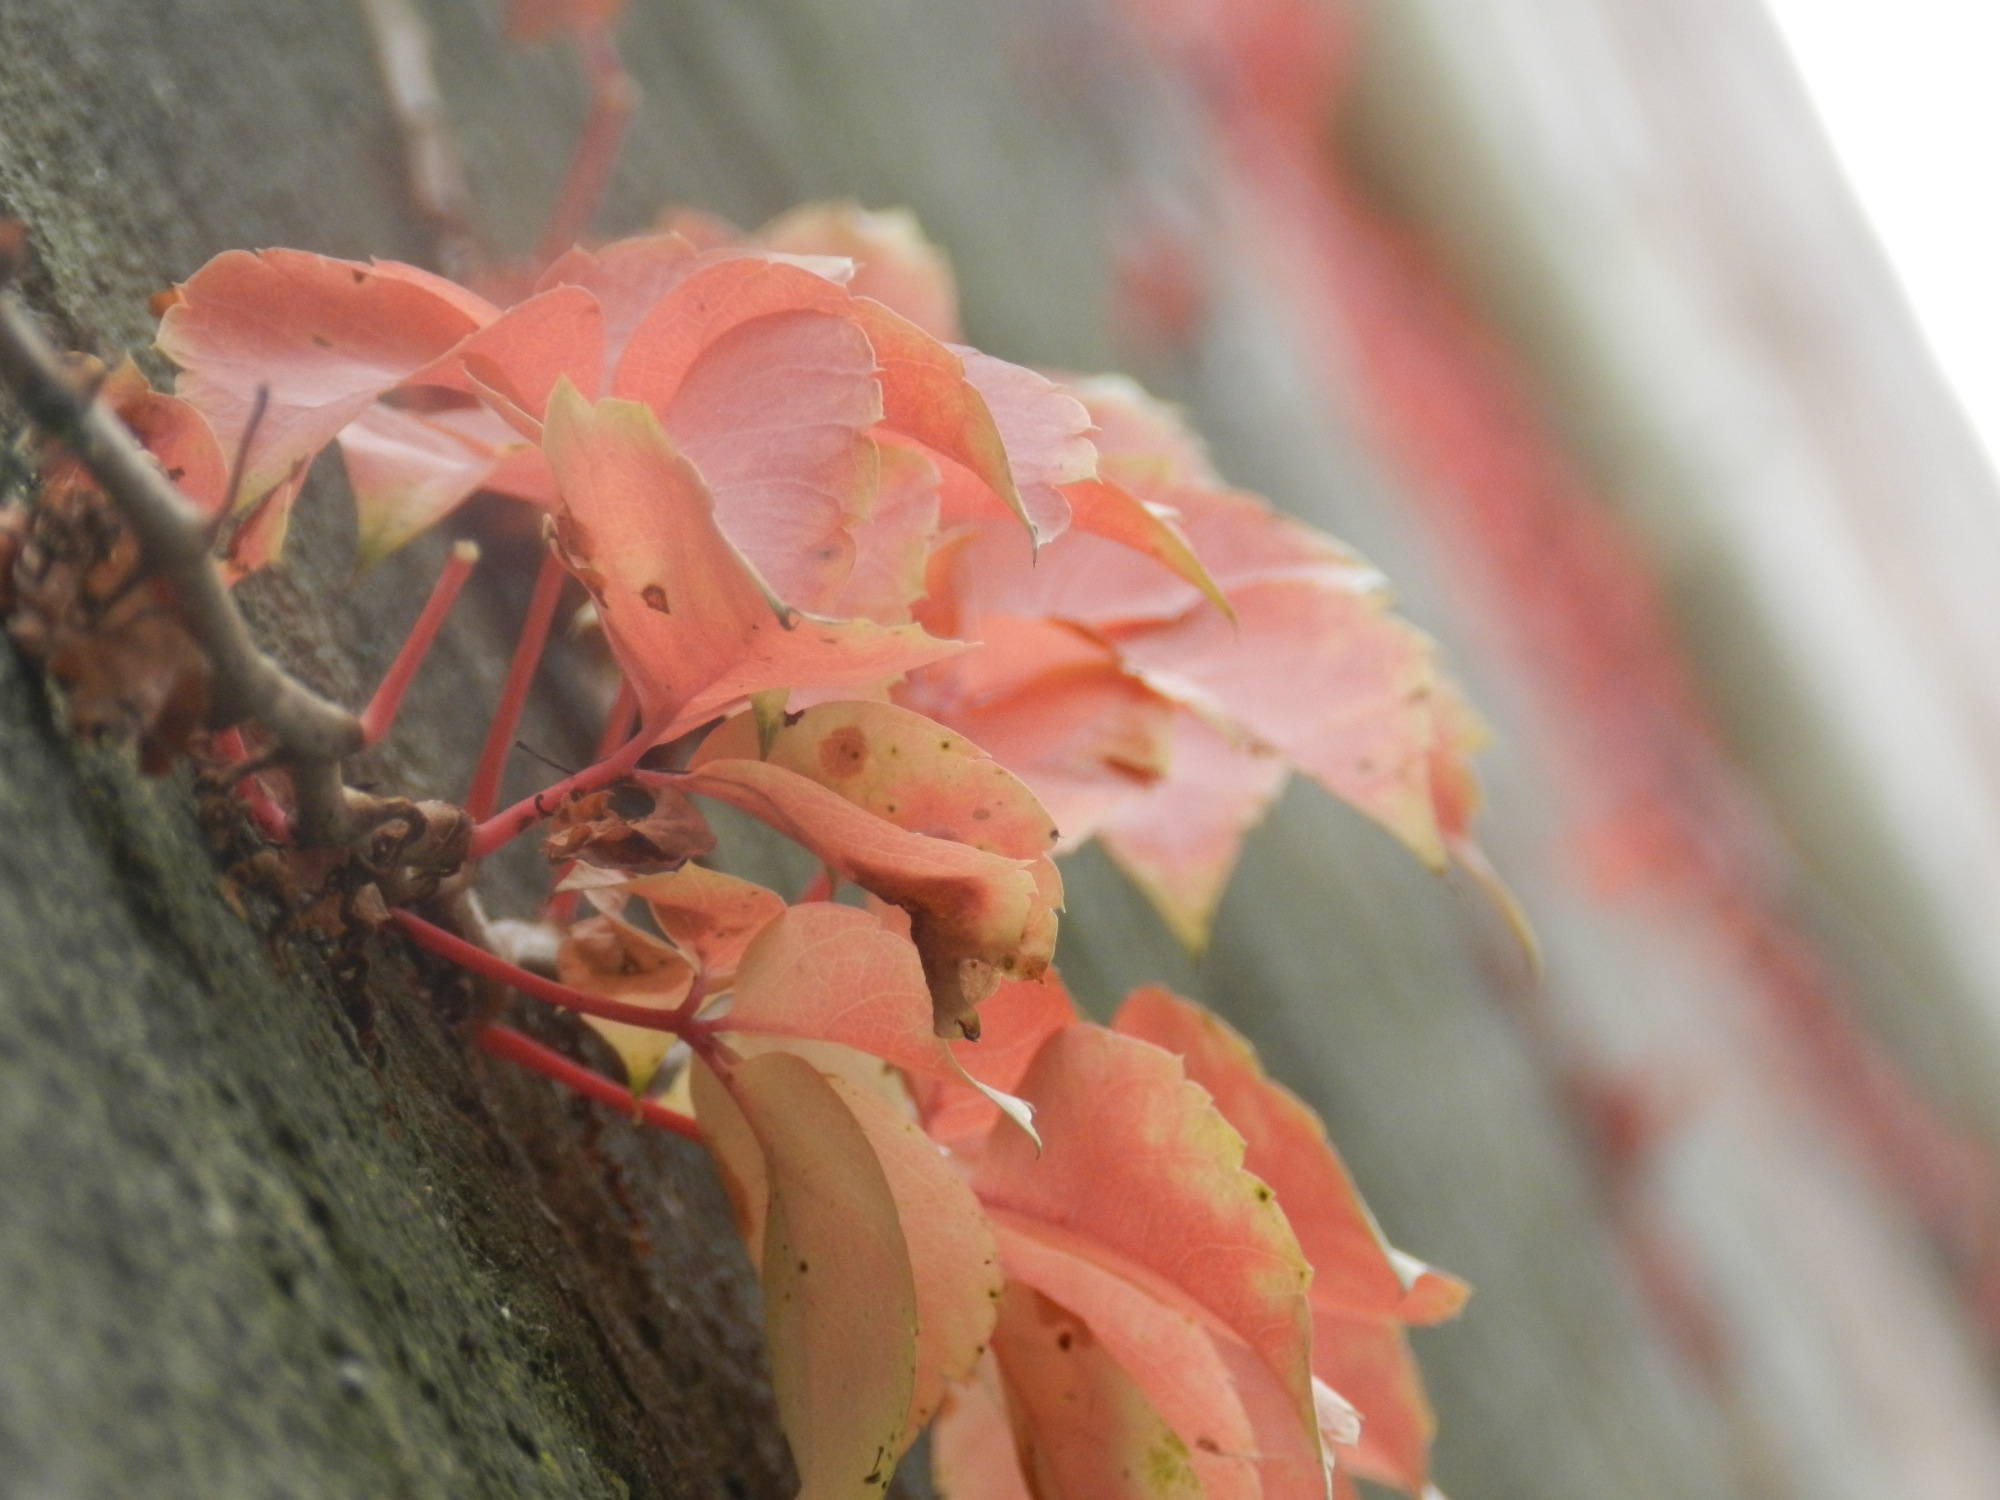 Detailaufnahme einer Blattkombination an einer mit roten Blättern bewachsenen Wand